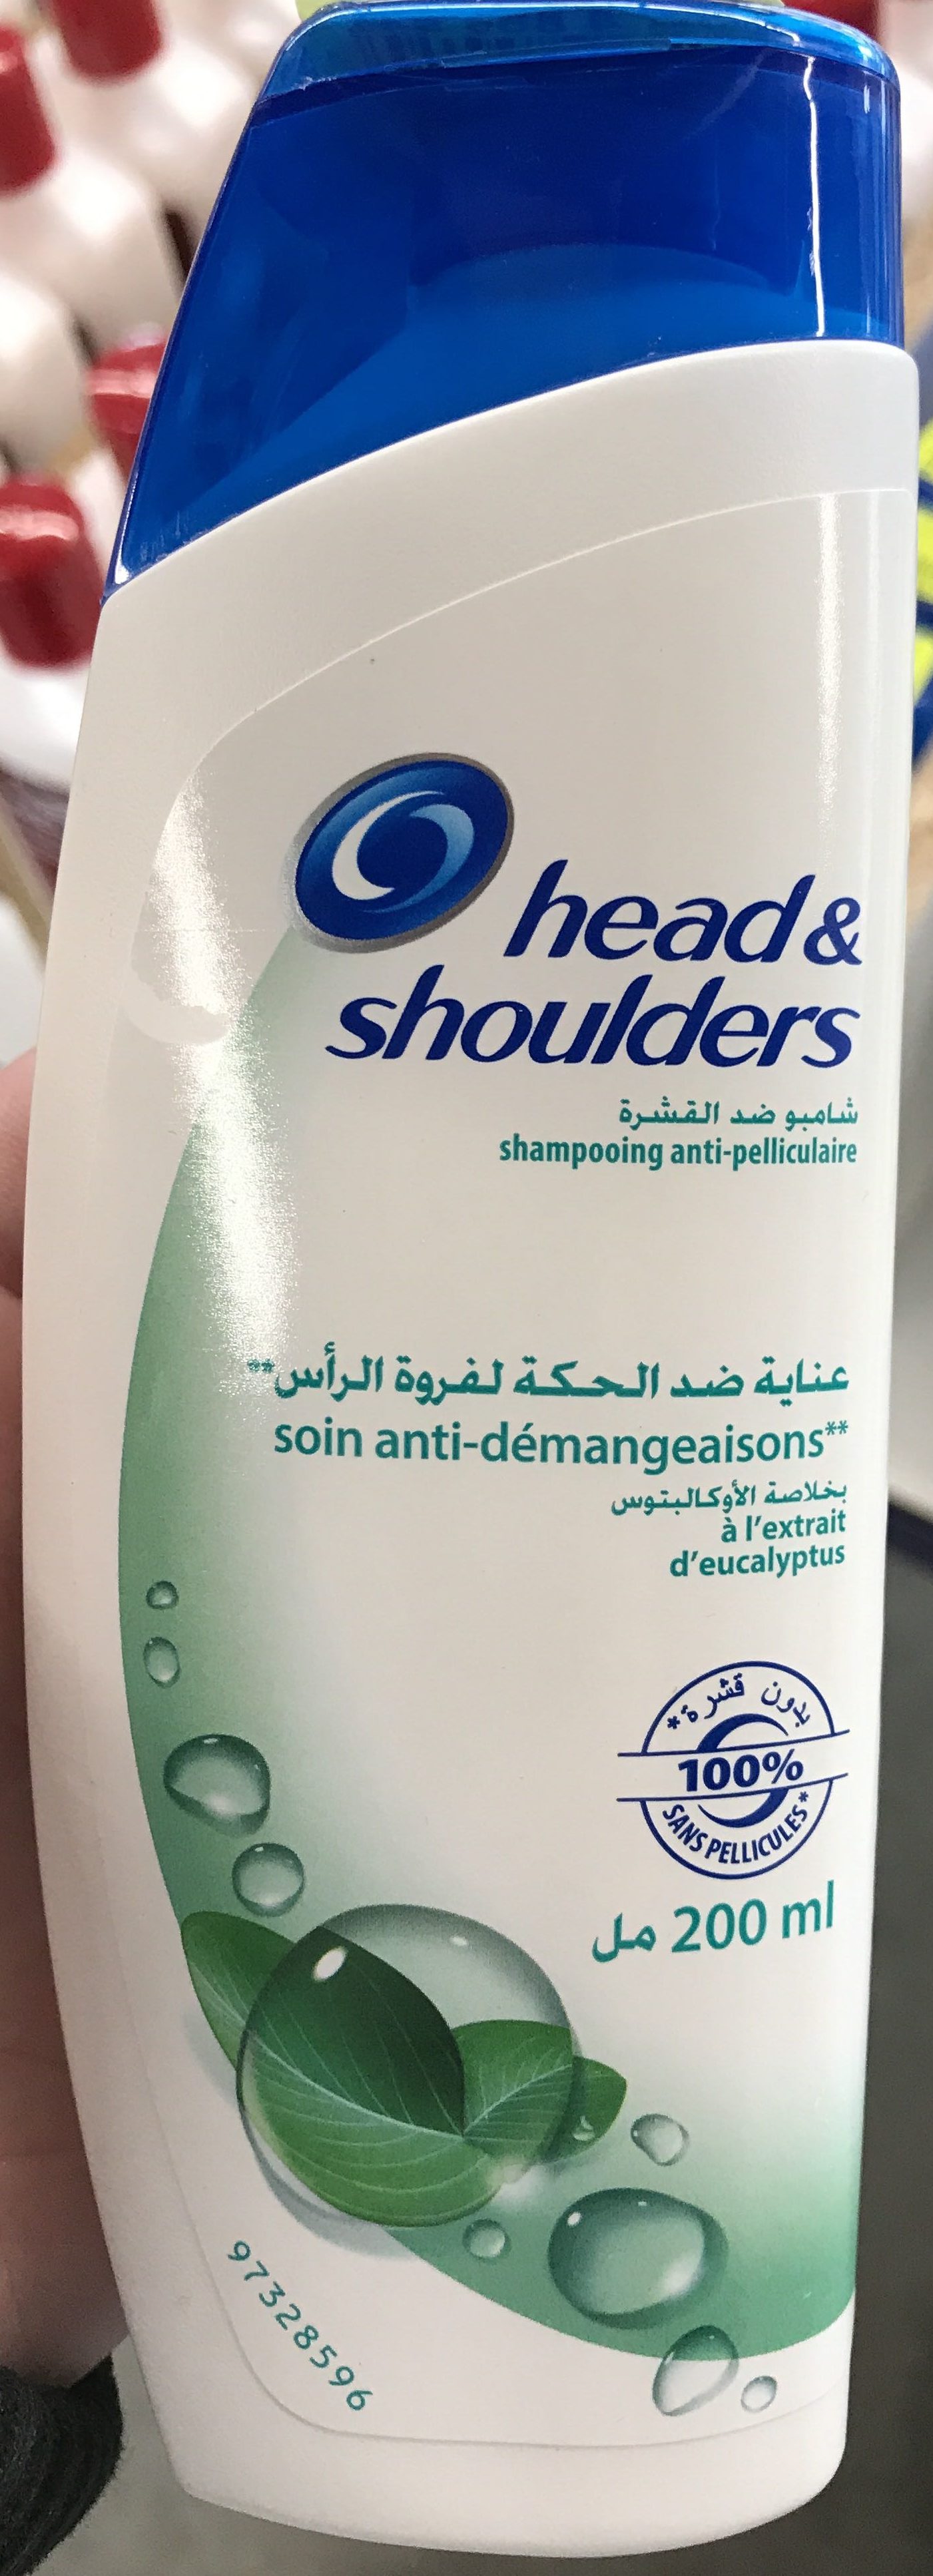 Shampooing anti-pelliculaire soin anti-démangeaisons à l'extrait d'eucalyptus - Produto - fr